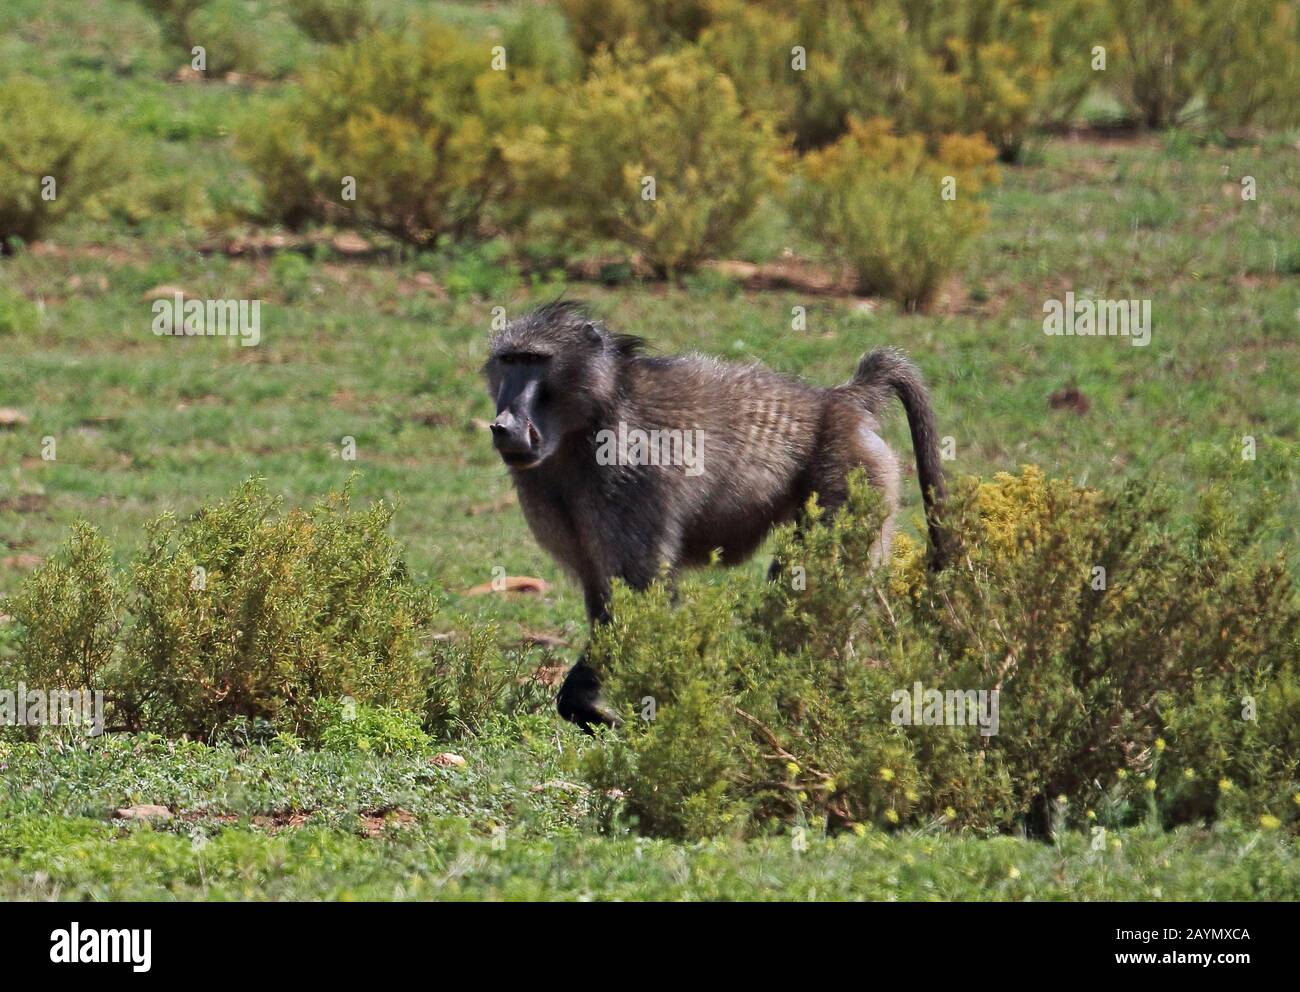 Chacma Baboon (Papio ursinus) adulte marchant sur les prairies Western Cape, Afrique du Sud Novembre Banque D'Images